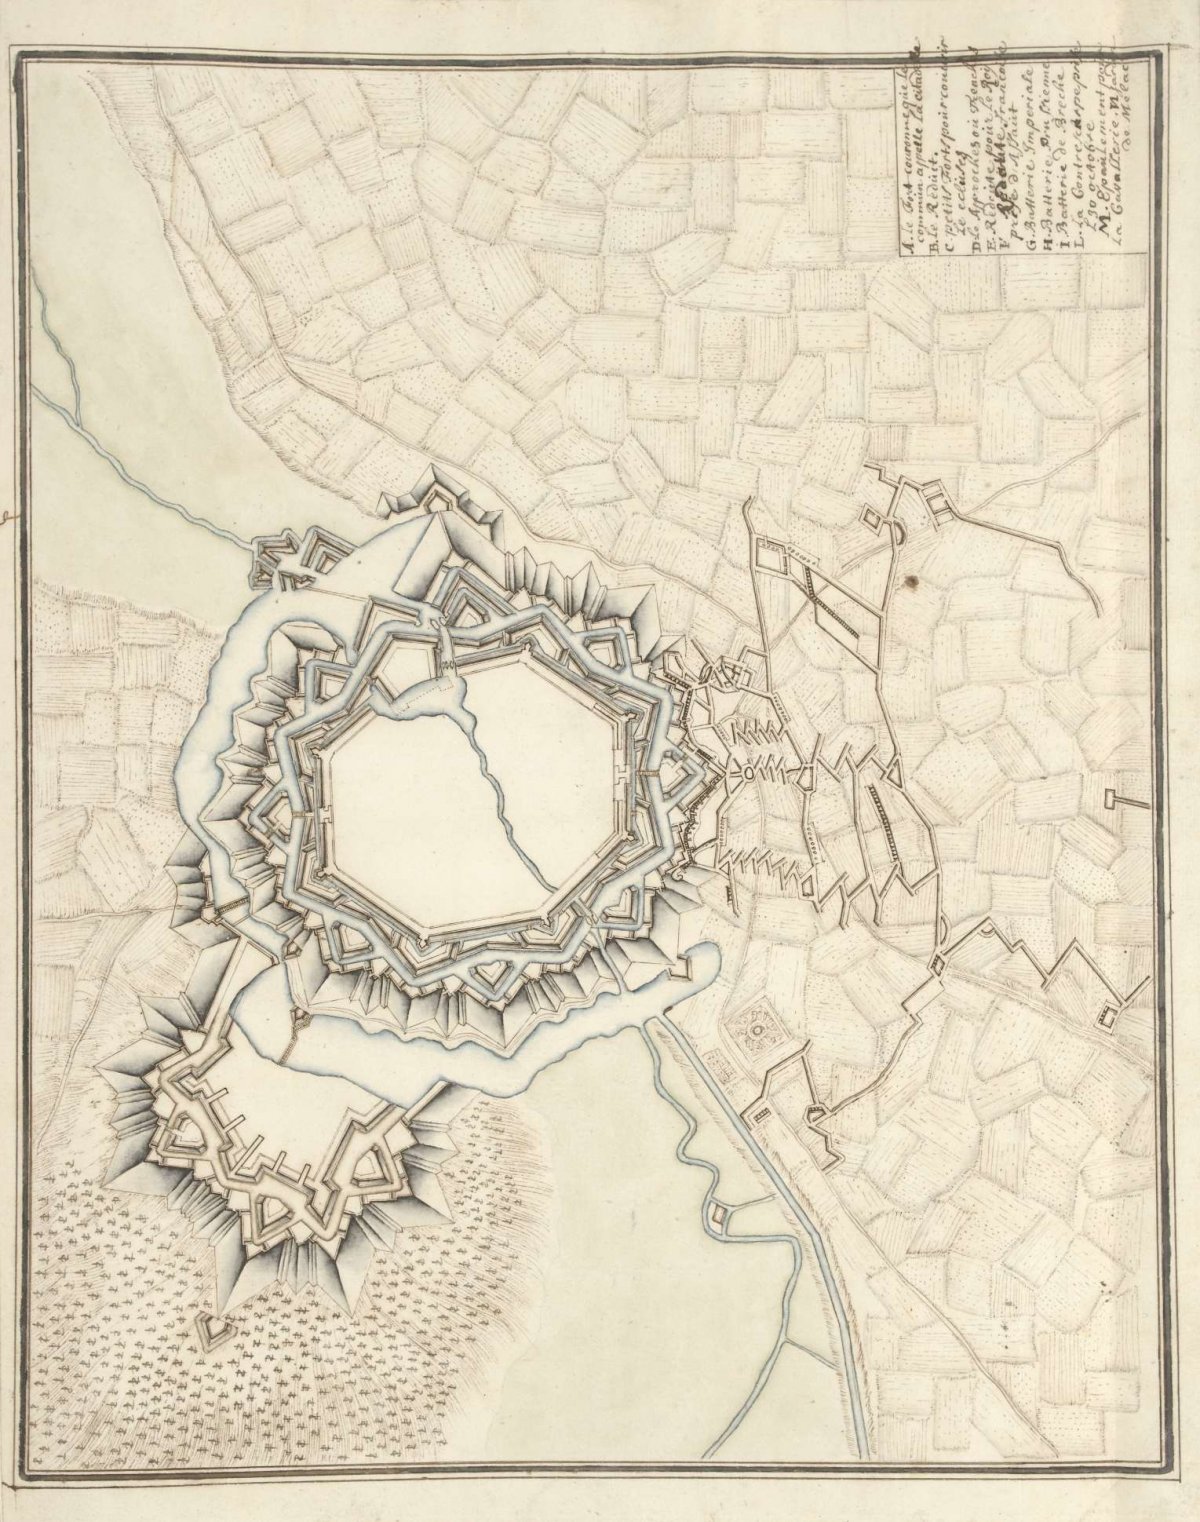 Map of Landau, ca. 1701-1715, Samuel Du Ry de Champdoré, 1701 - 1715